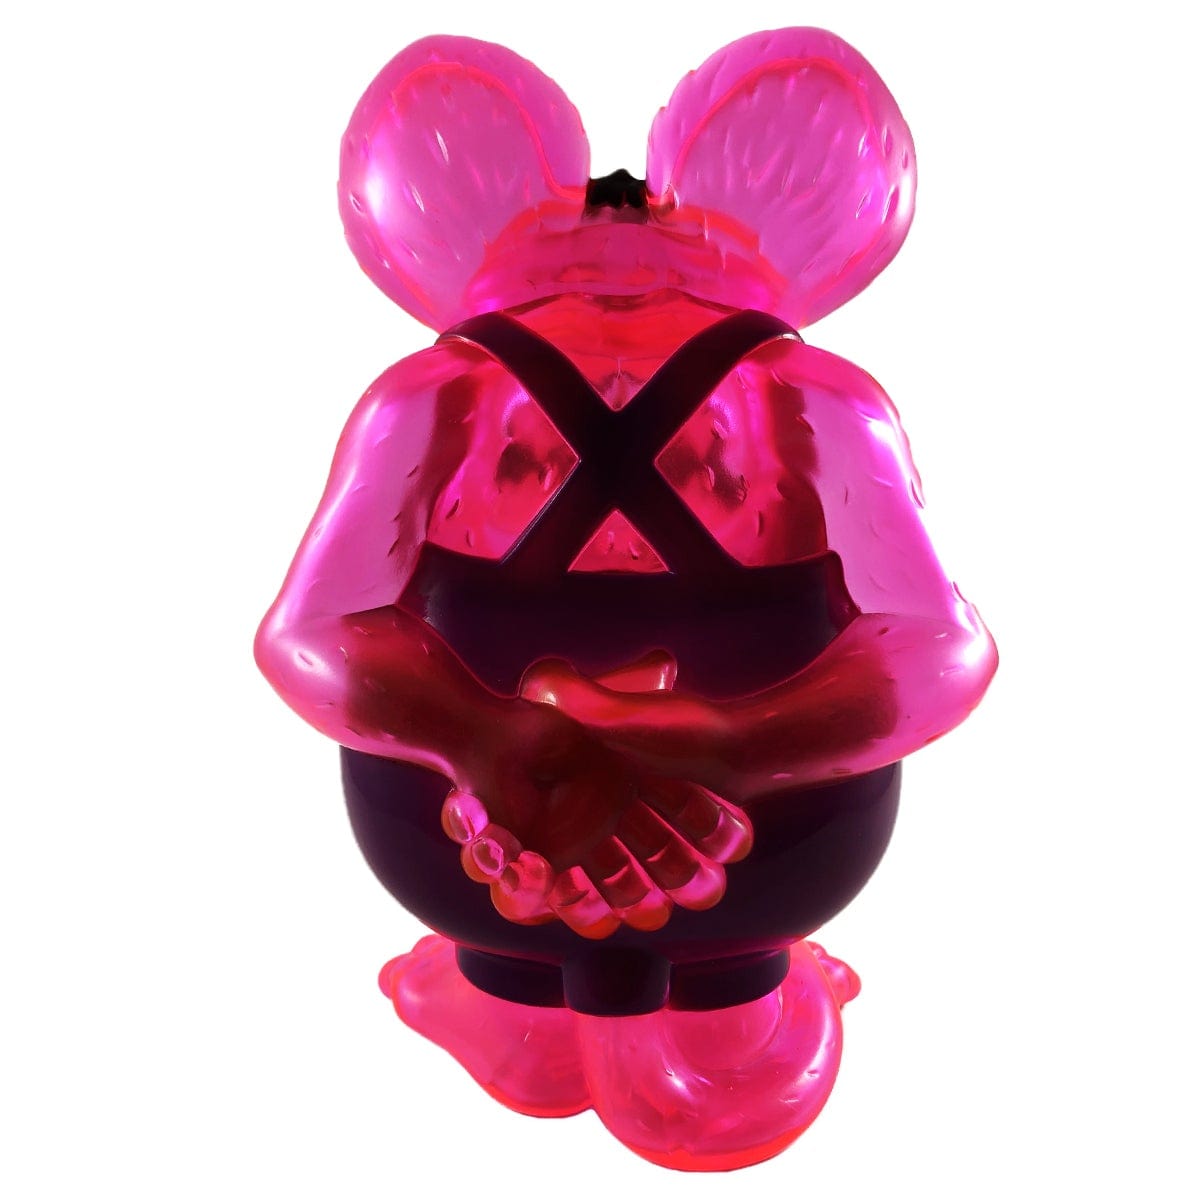 Rat Fink Translucent Pink by Ed Roth x Secret Base